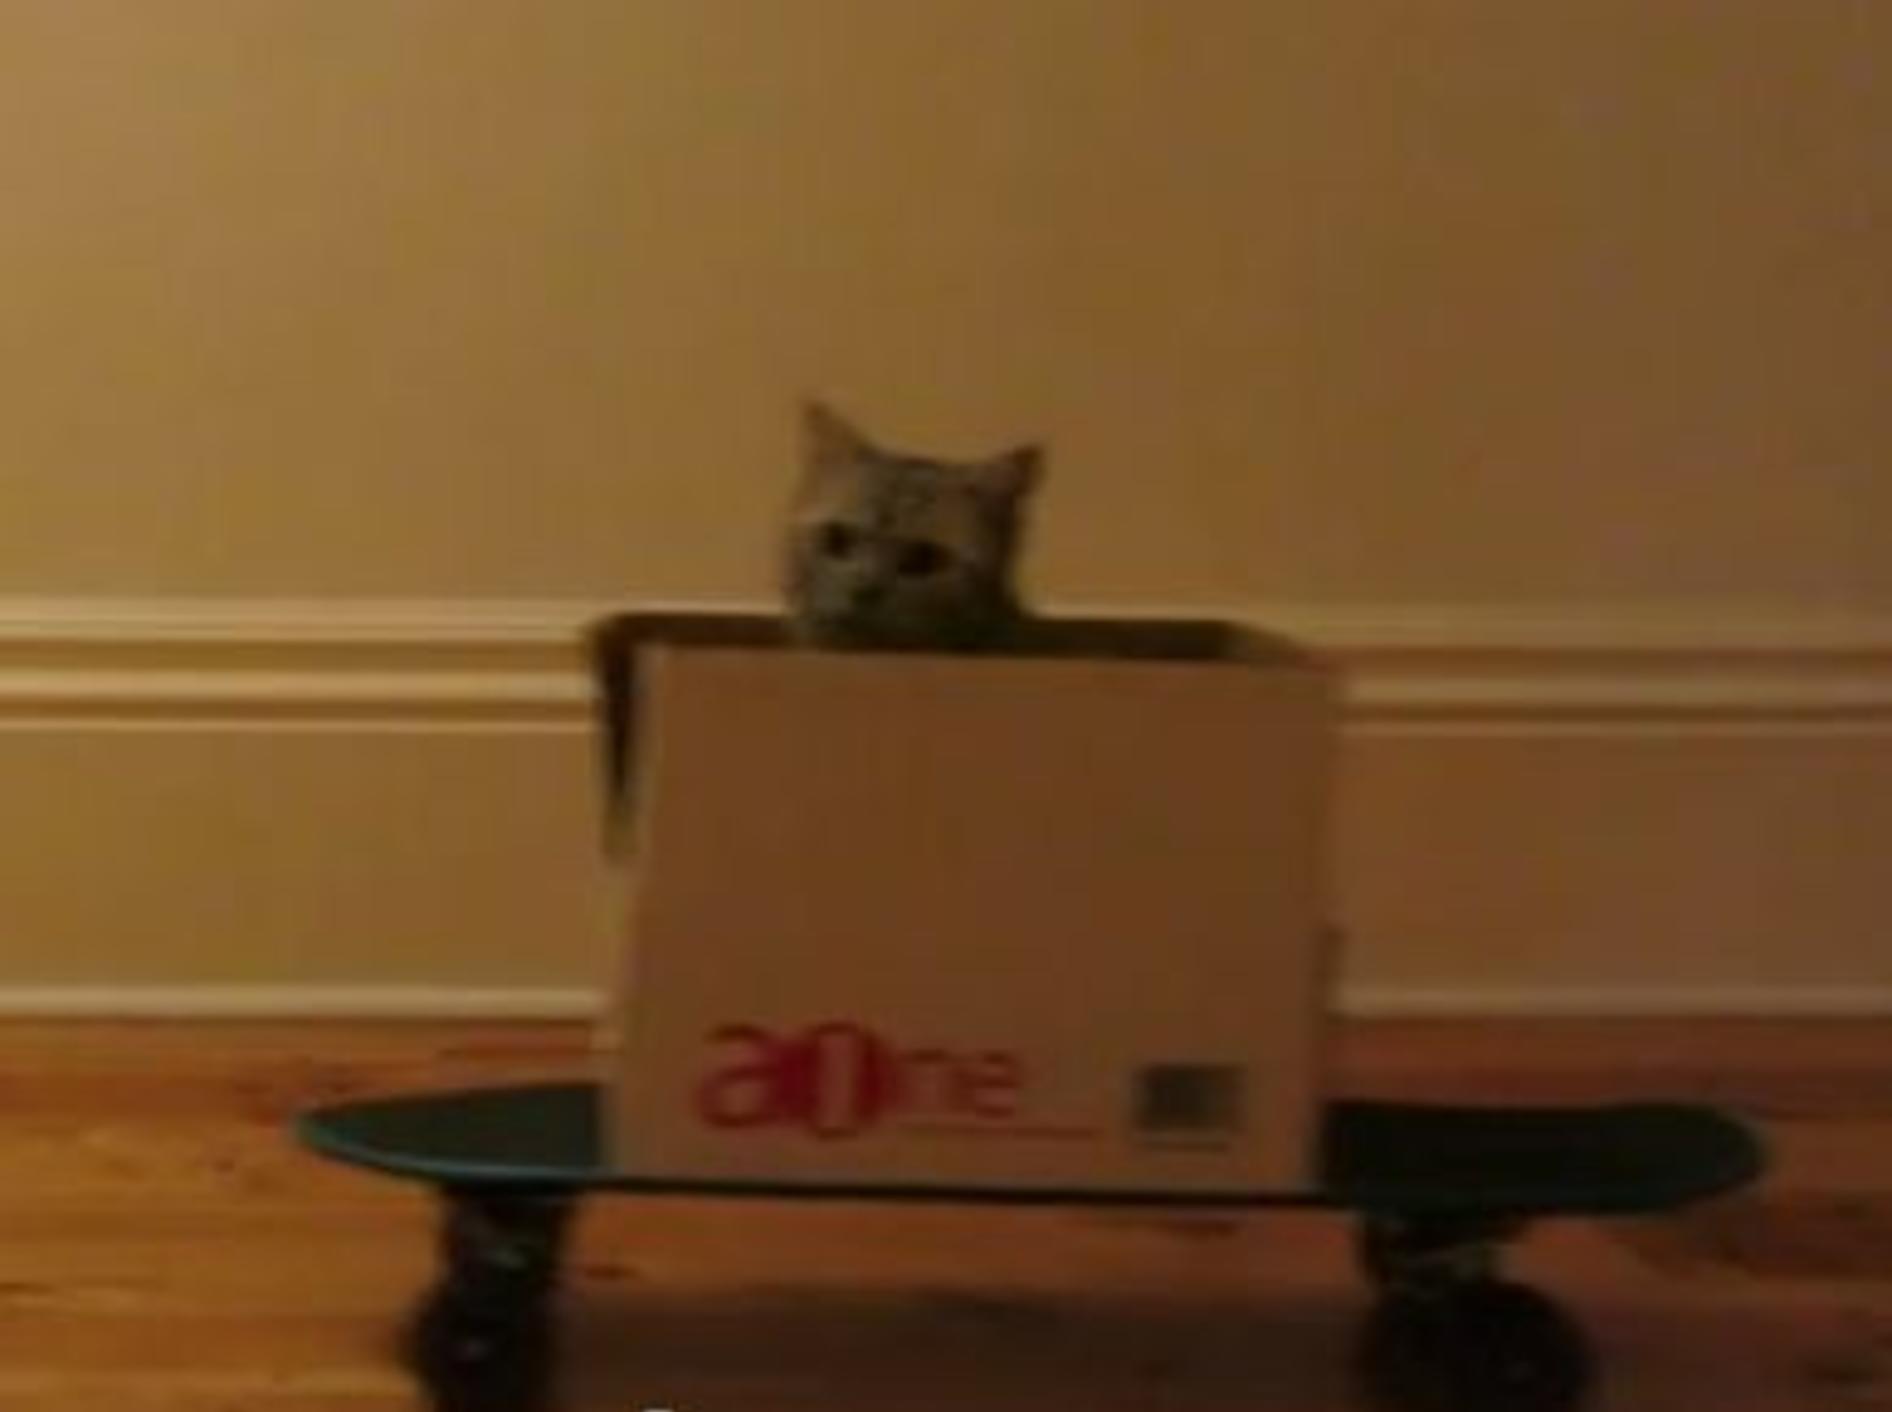 Lustige Katze skatet im Karton — Bild: Youtube / perkyballs